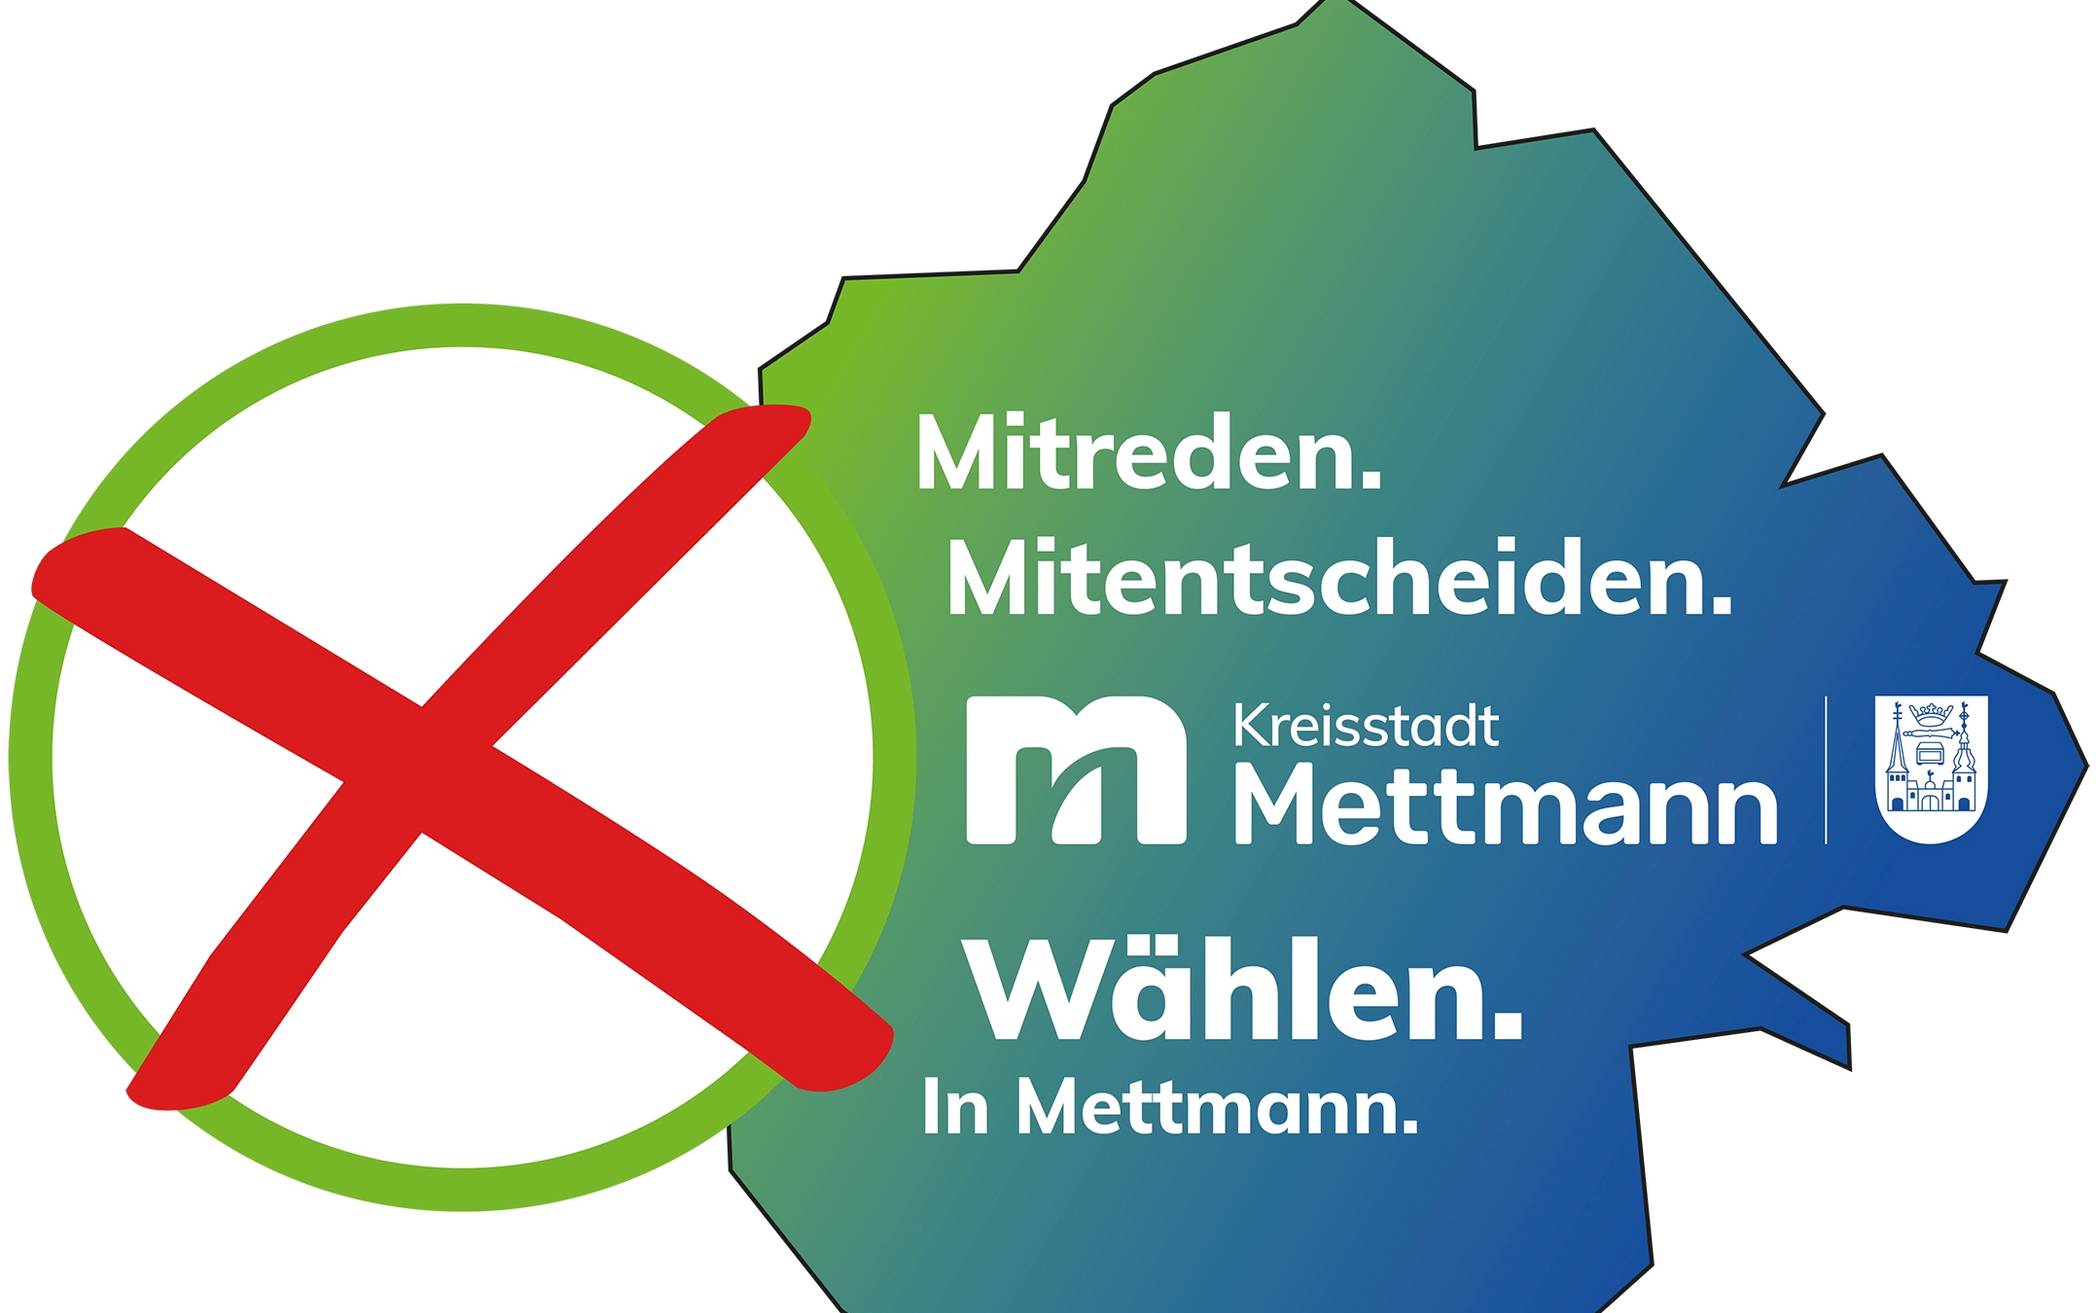  Die Wahlbeteiligung in Mettmann lag bei rund 53 Prozent. Da ist noch viel Luft nach oben. 